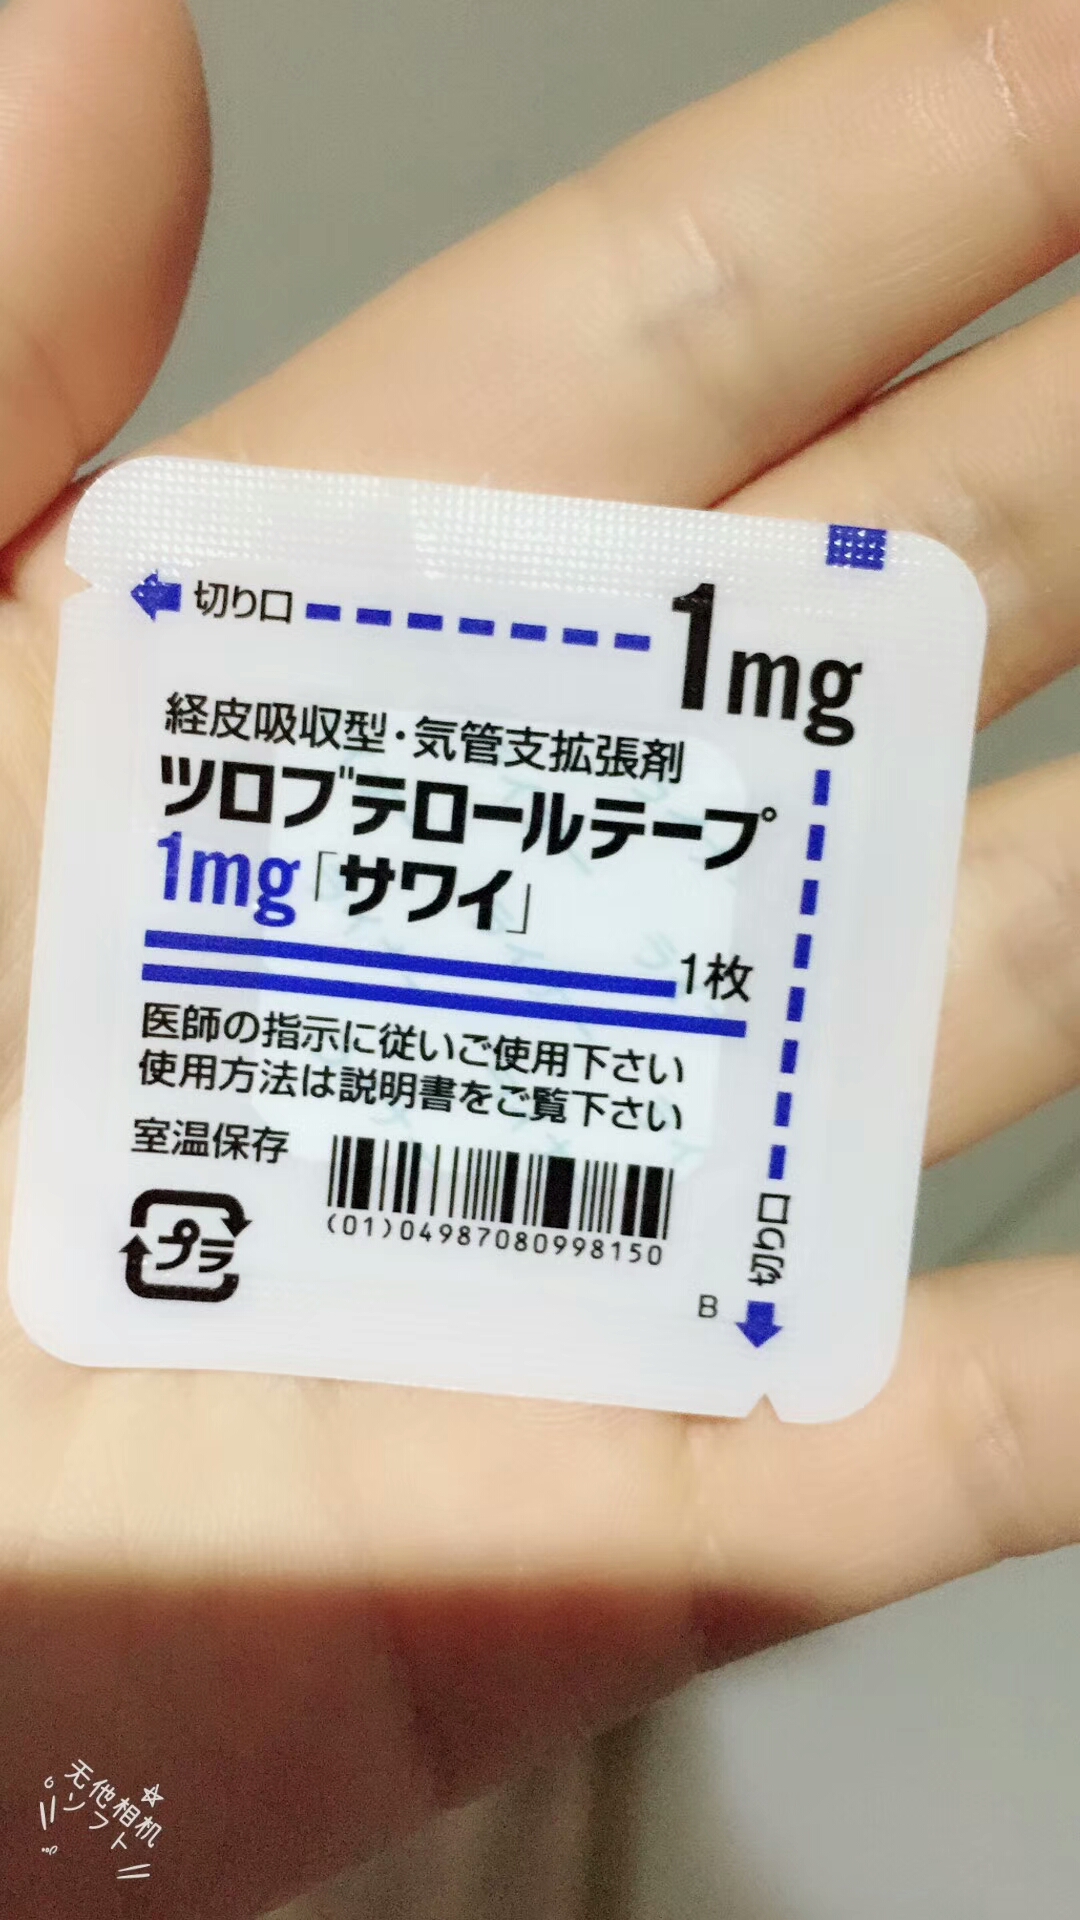 求助!日本的处方药咳嗽贴,在冲绳哪里可以买